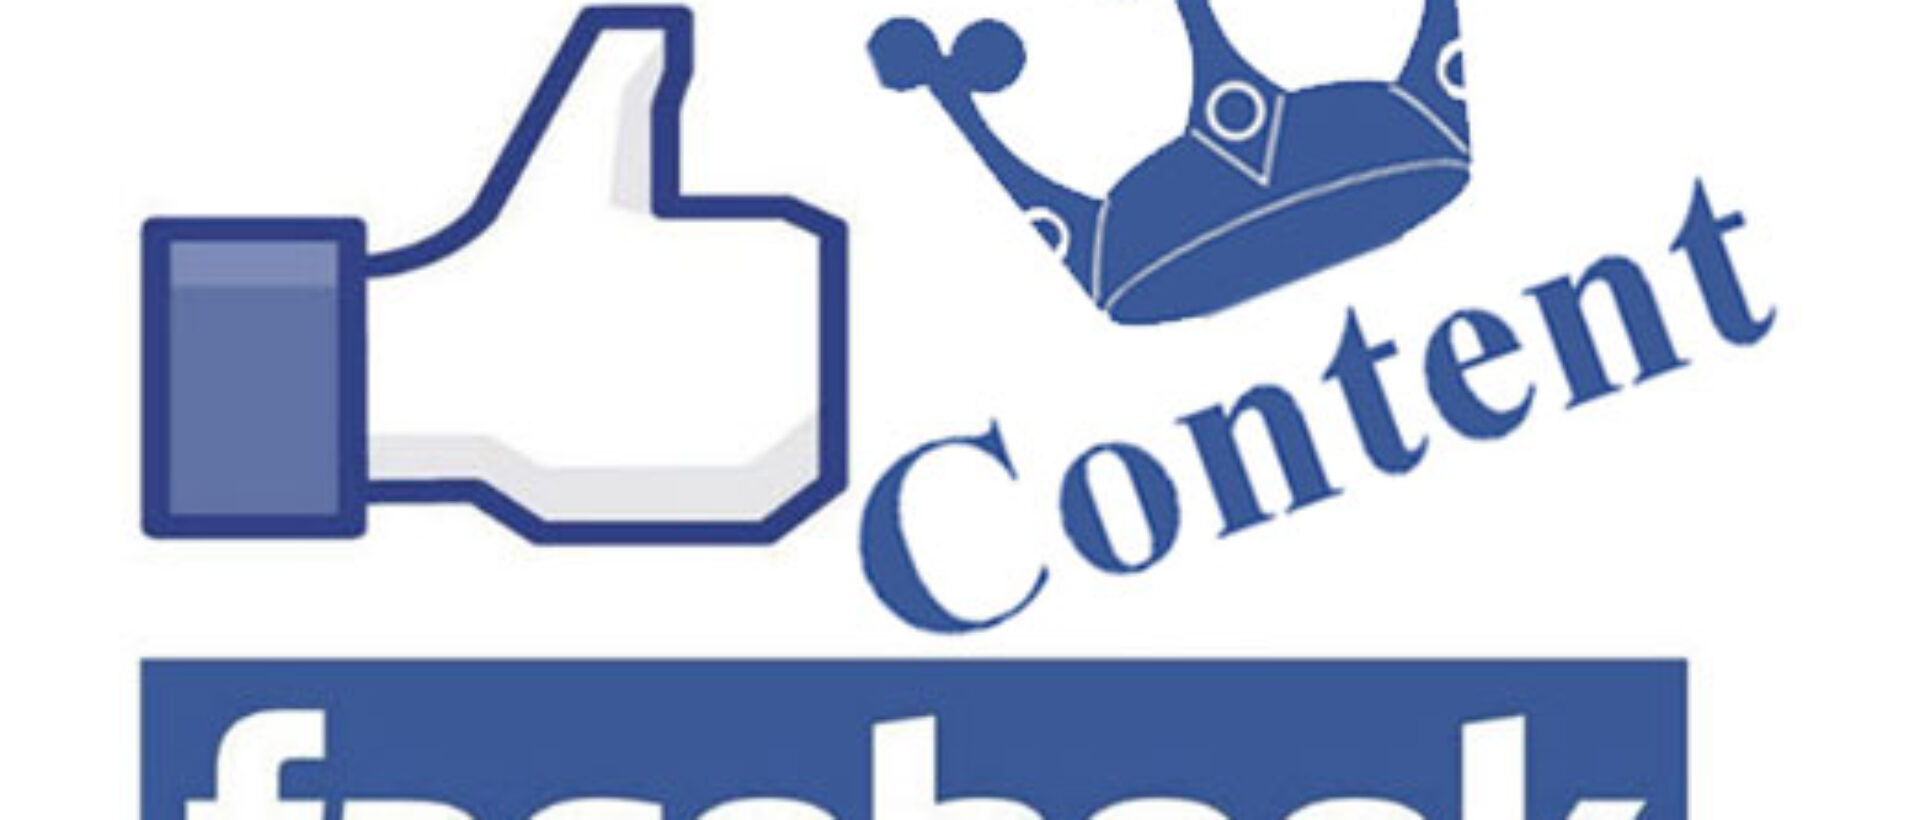 Facebook Content, Facebook Algorithmus-Anpassung